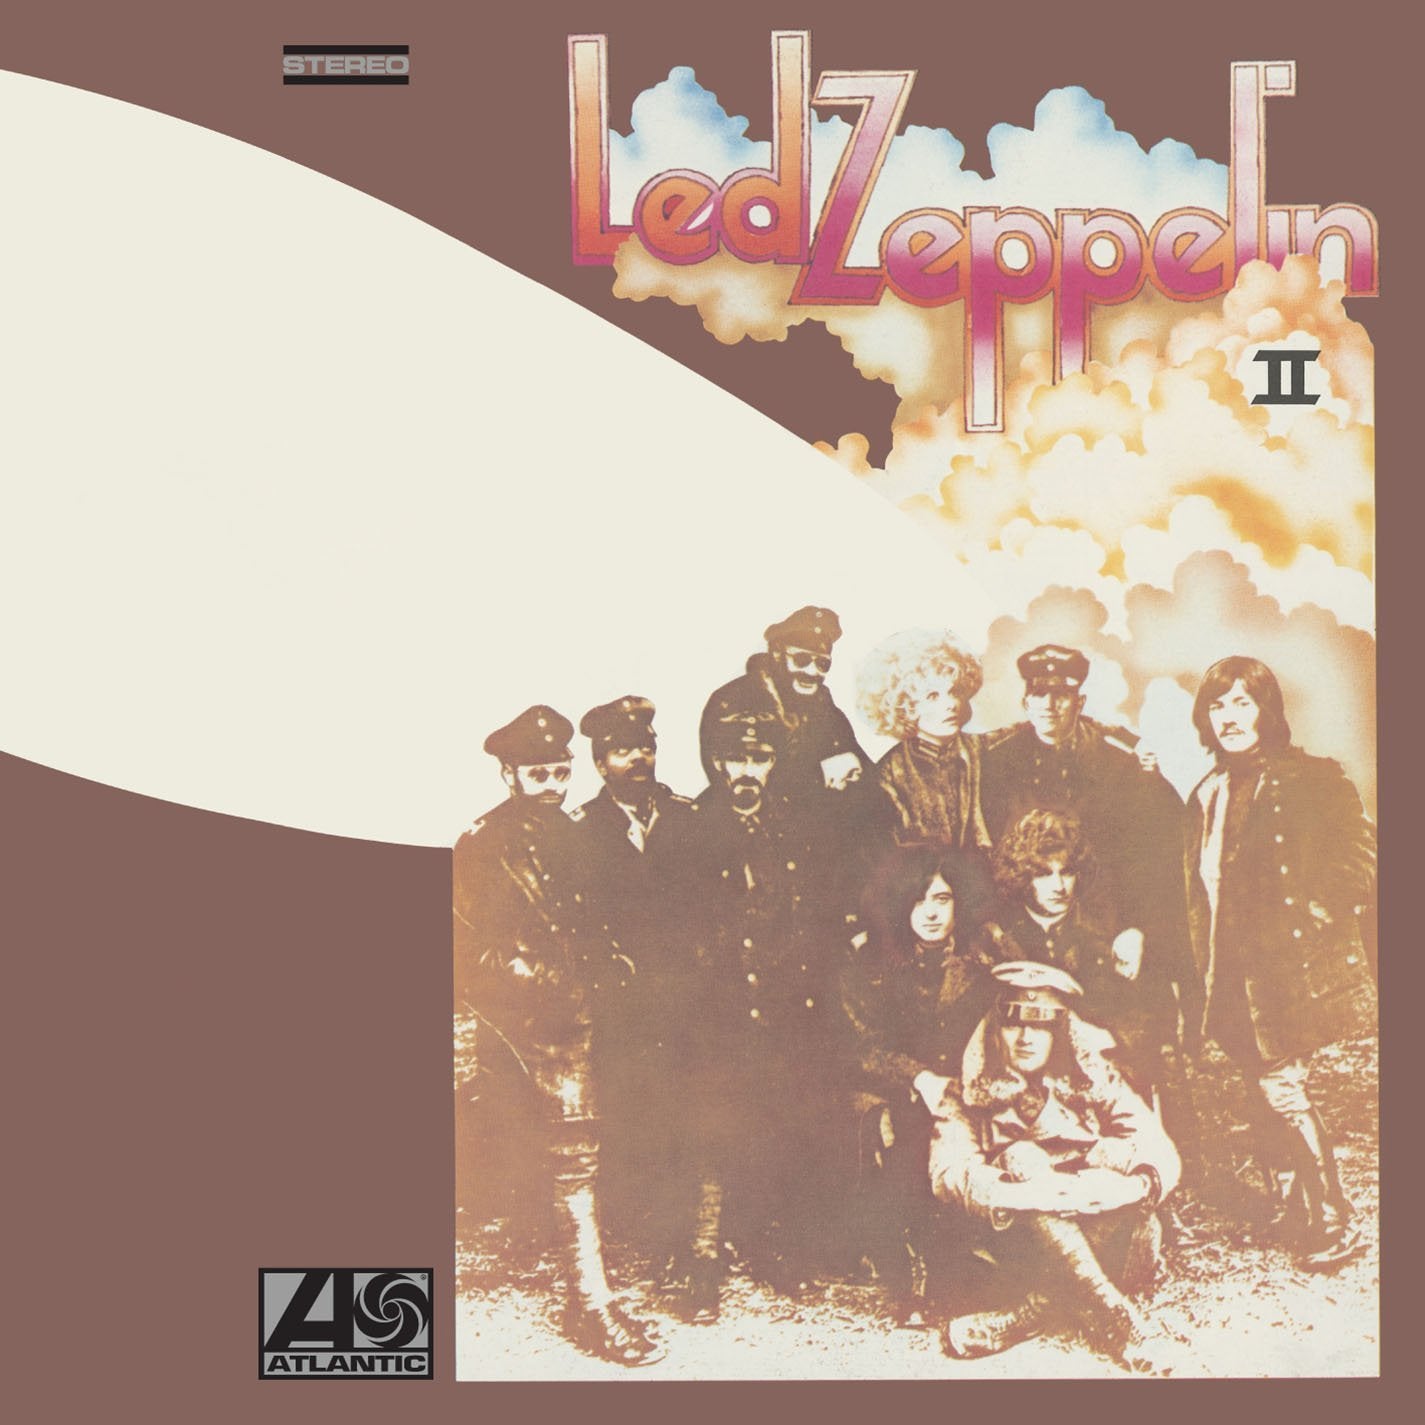 Led Zeppelin "Led Zeppelin II" Vinyl